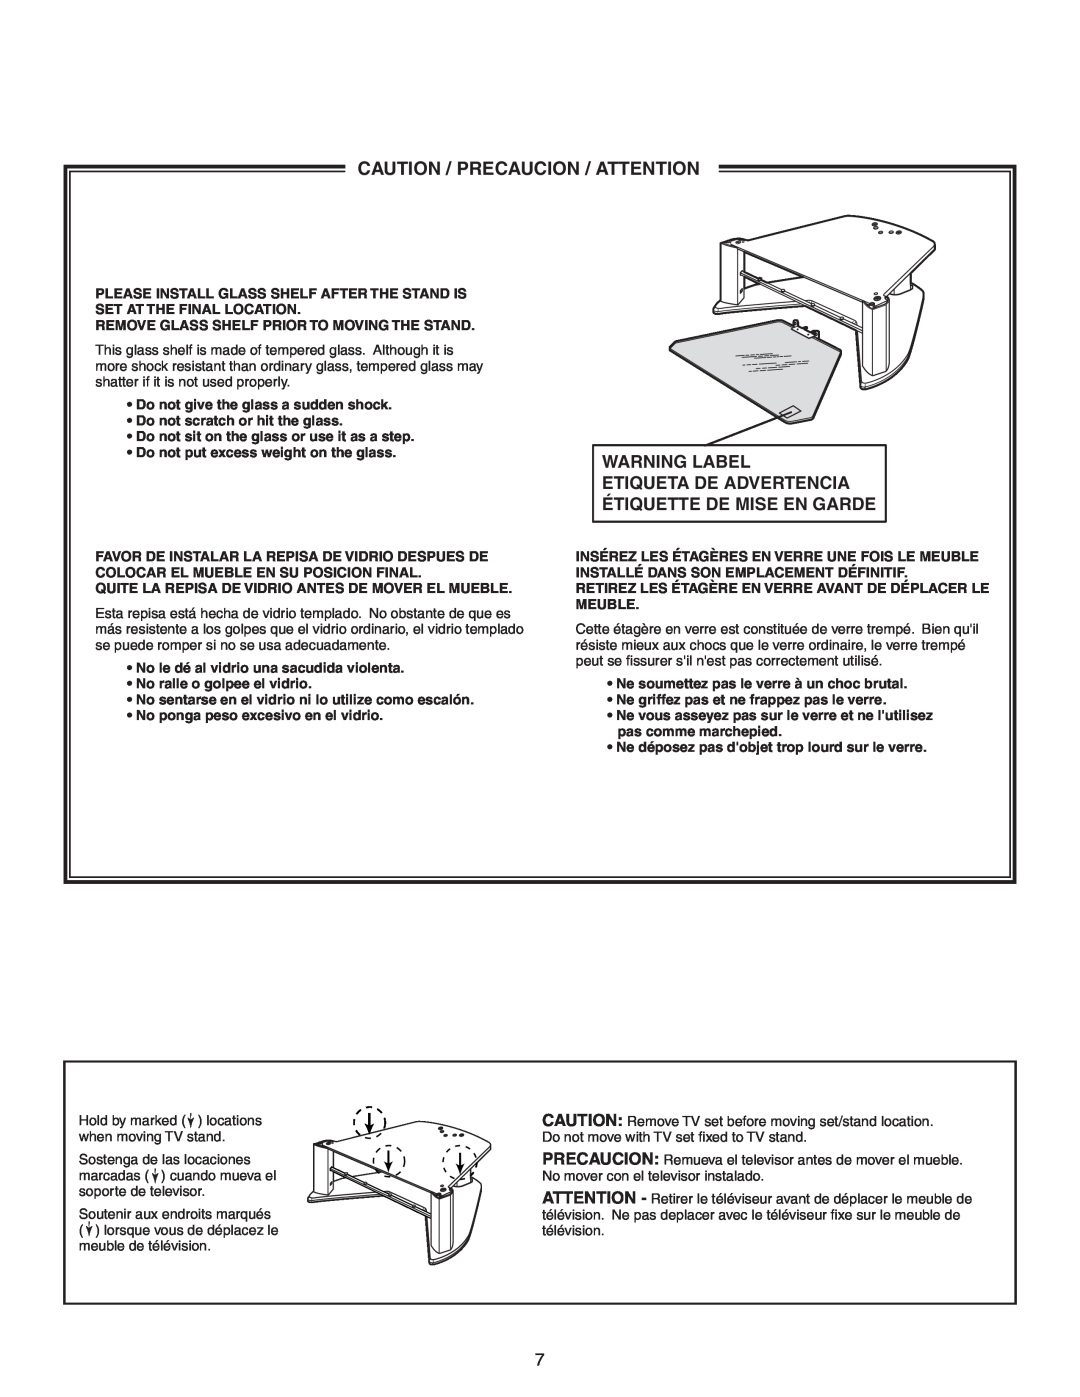 Sony SU-30HX1 manual Caution / Precaucion / Attention, Warning Label Etiqueta De Advertencia Étiquette De Mise En Garde 